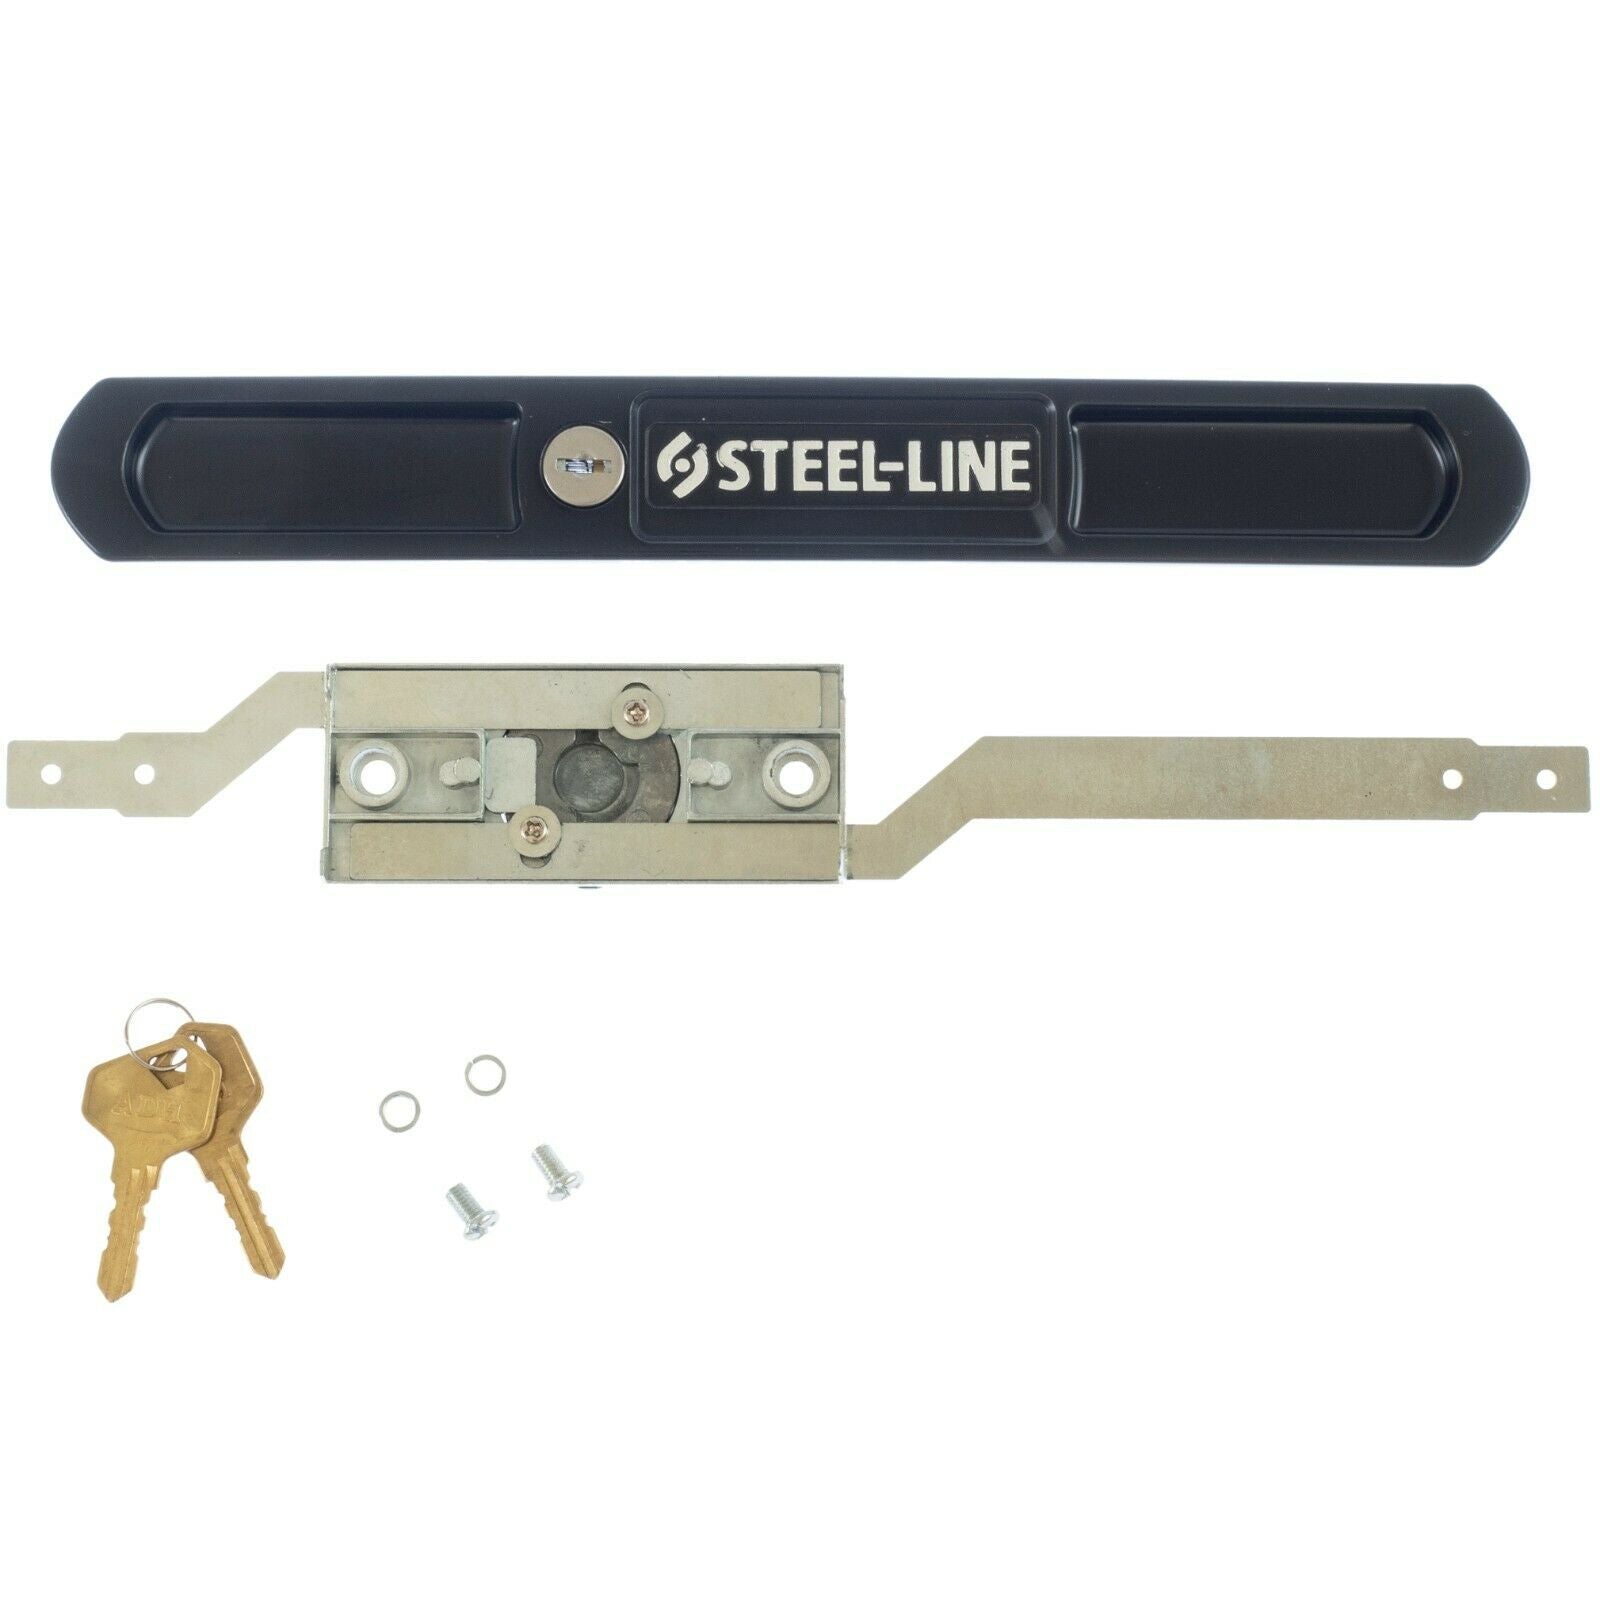 Steel-Line Compatible Roller Door Lock Replacement